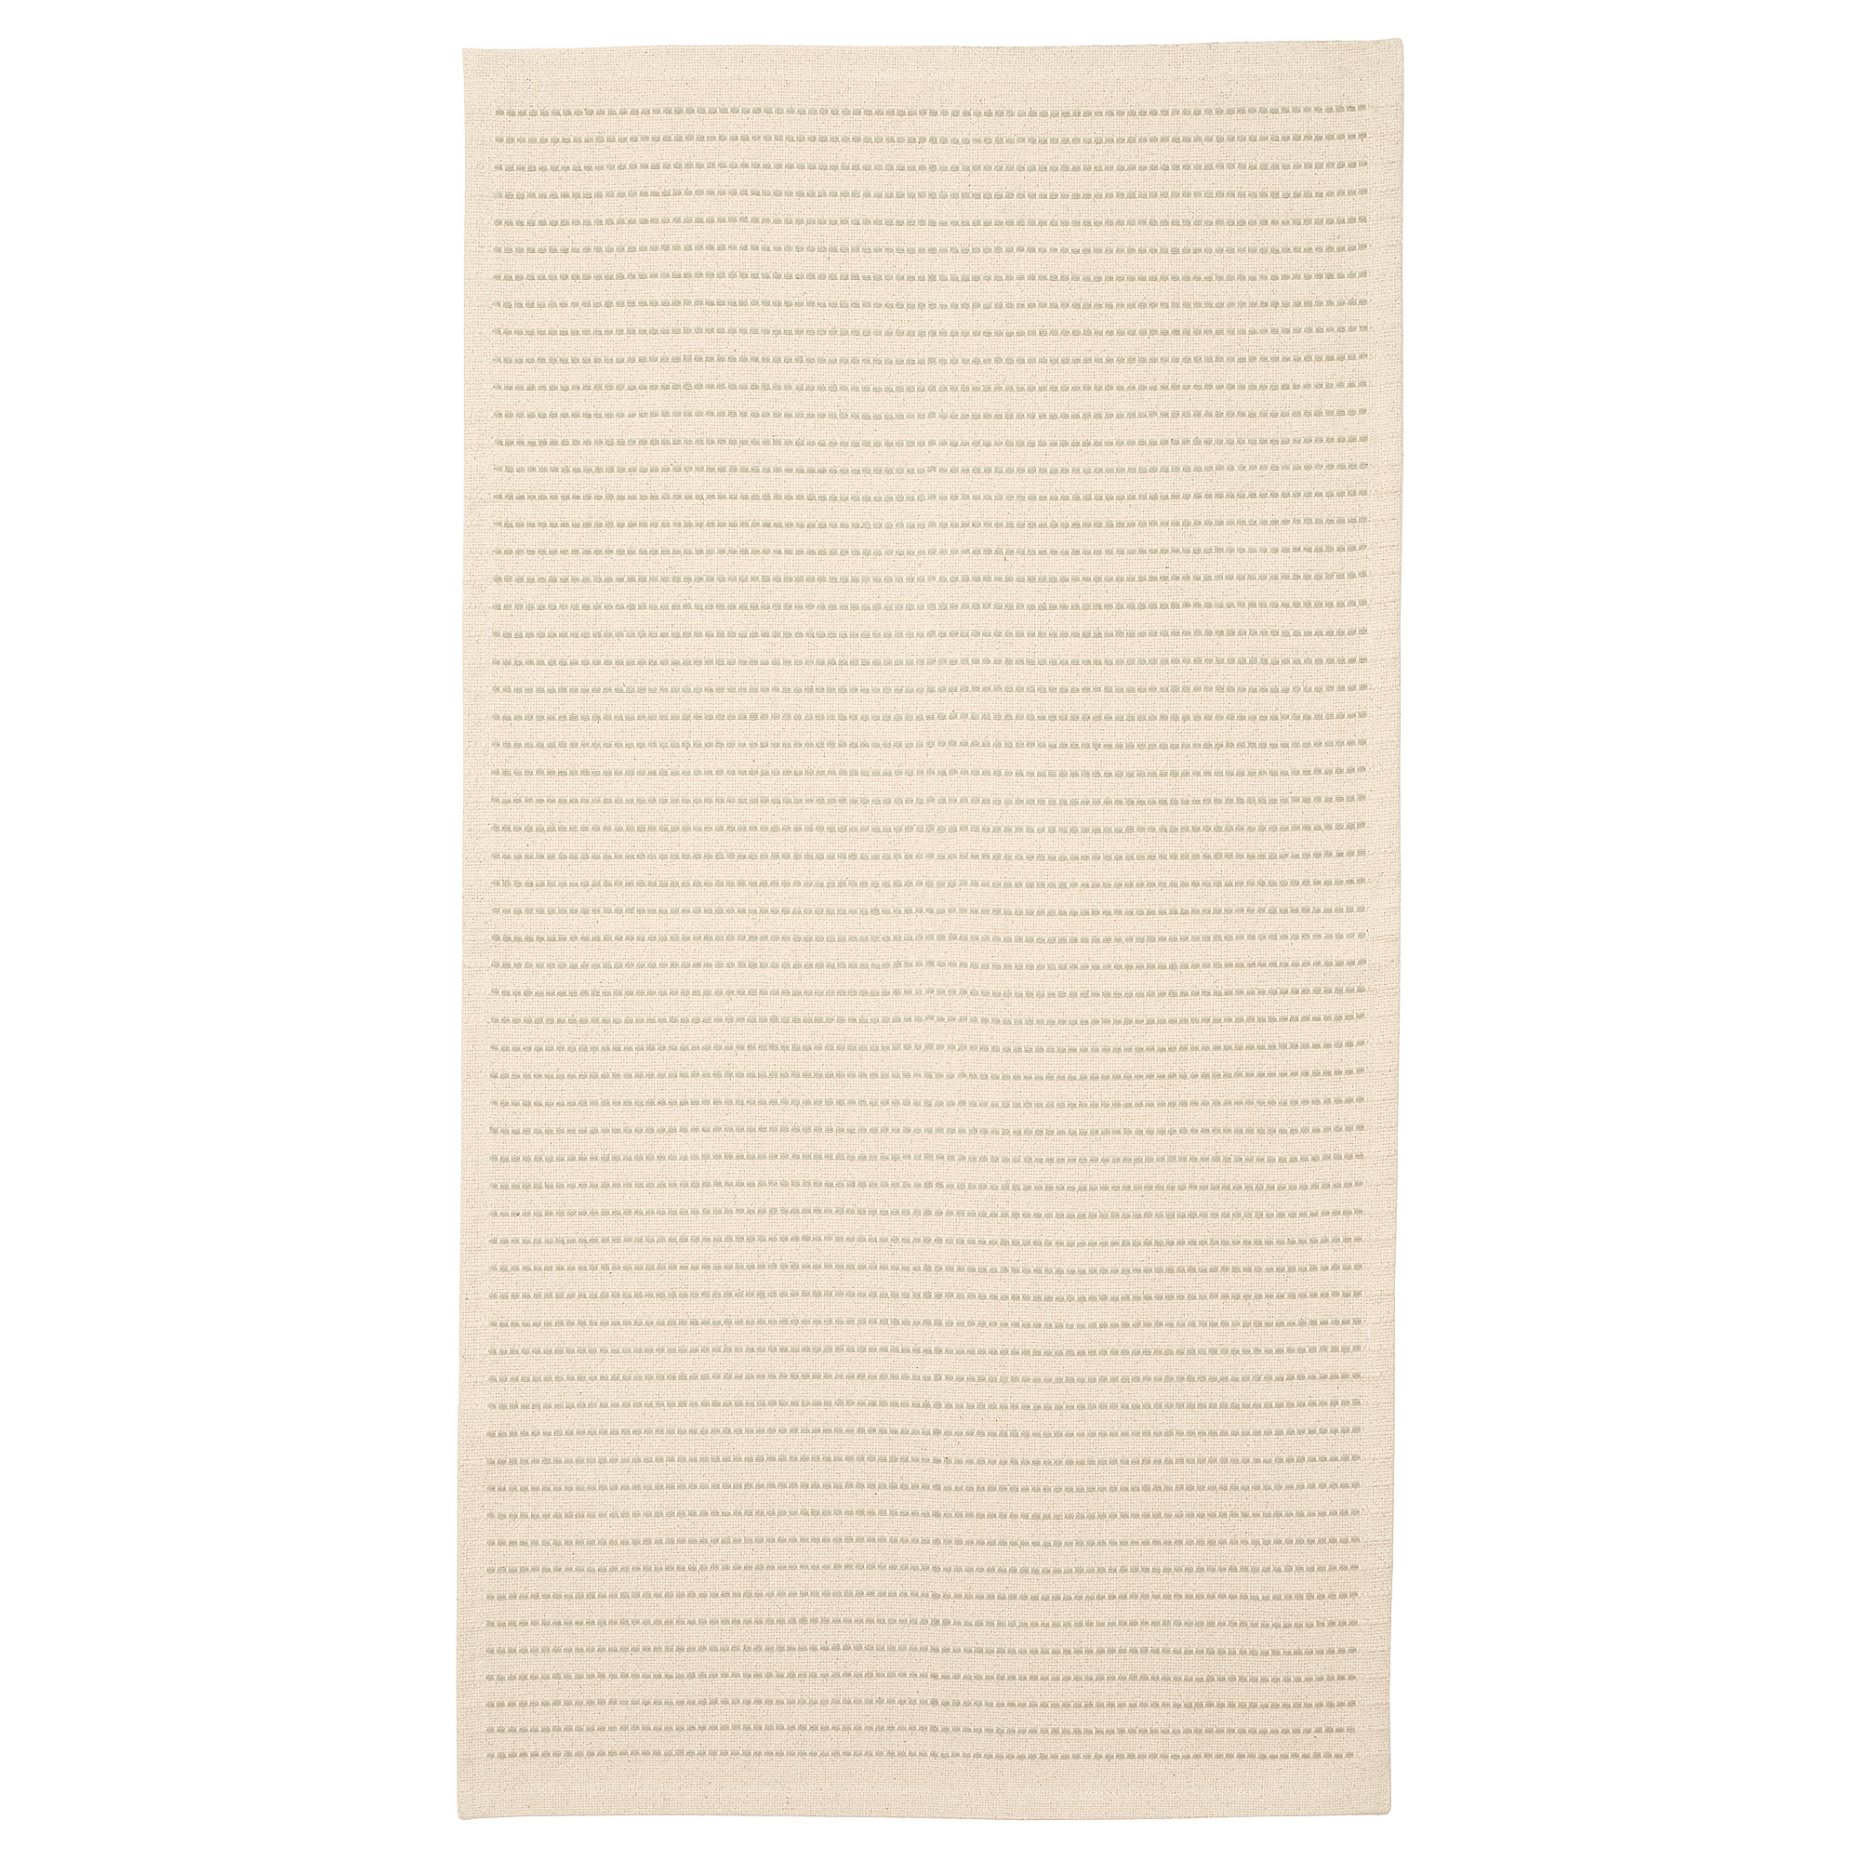 STARREKLINTE, килим, гладко тъкан, 80х150 см, 705.079.01